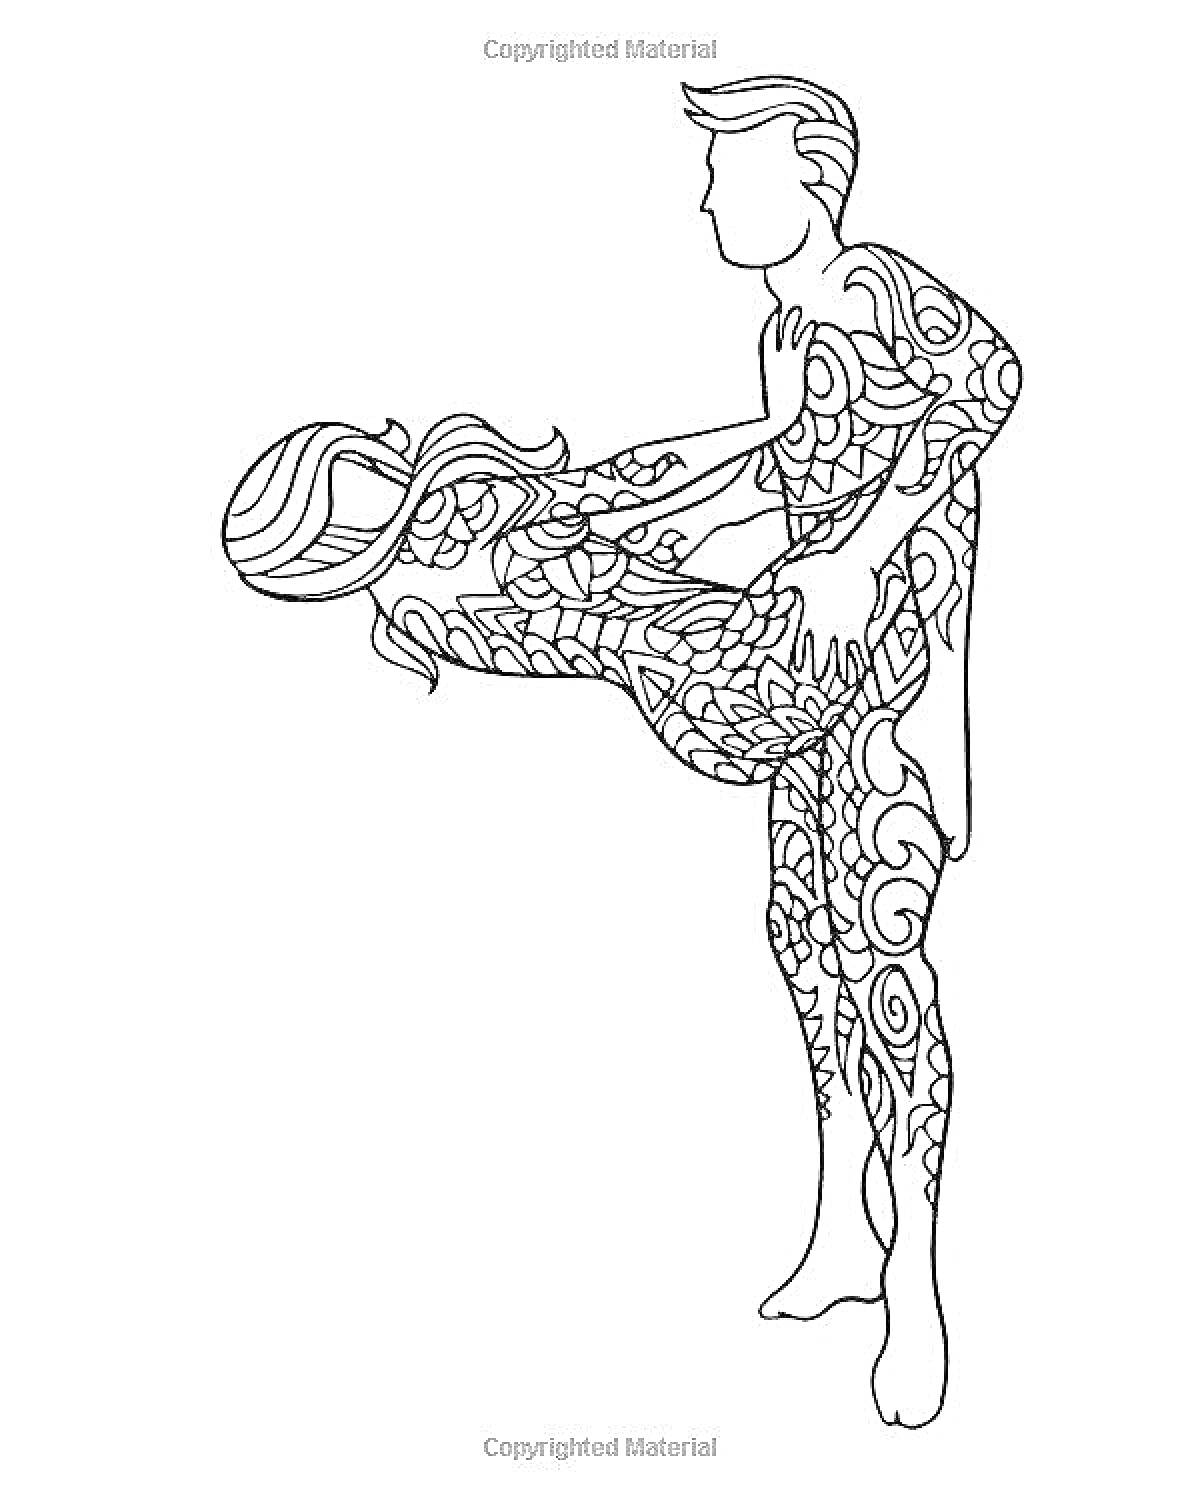 Раскраска Раскраска с парой в абстрактном стиле, мужчина и женщина в эротической позе, узоры на телах